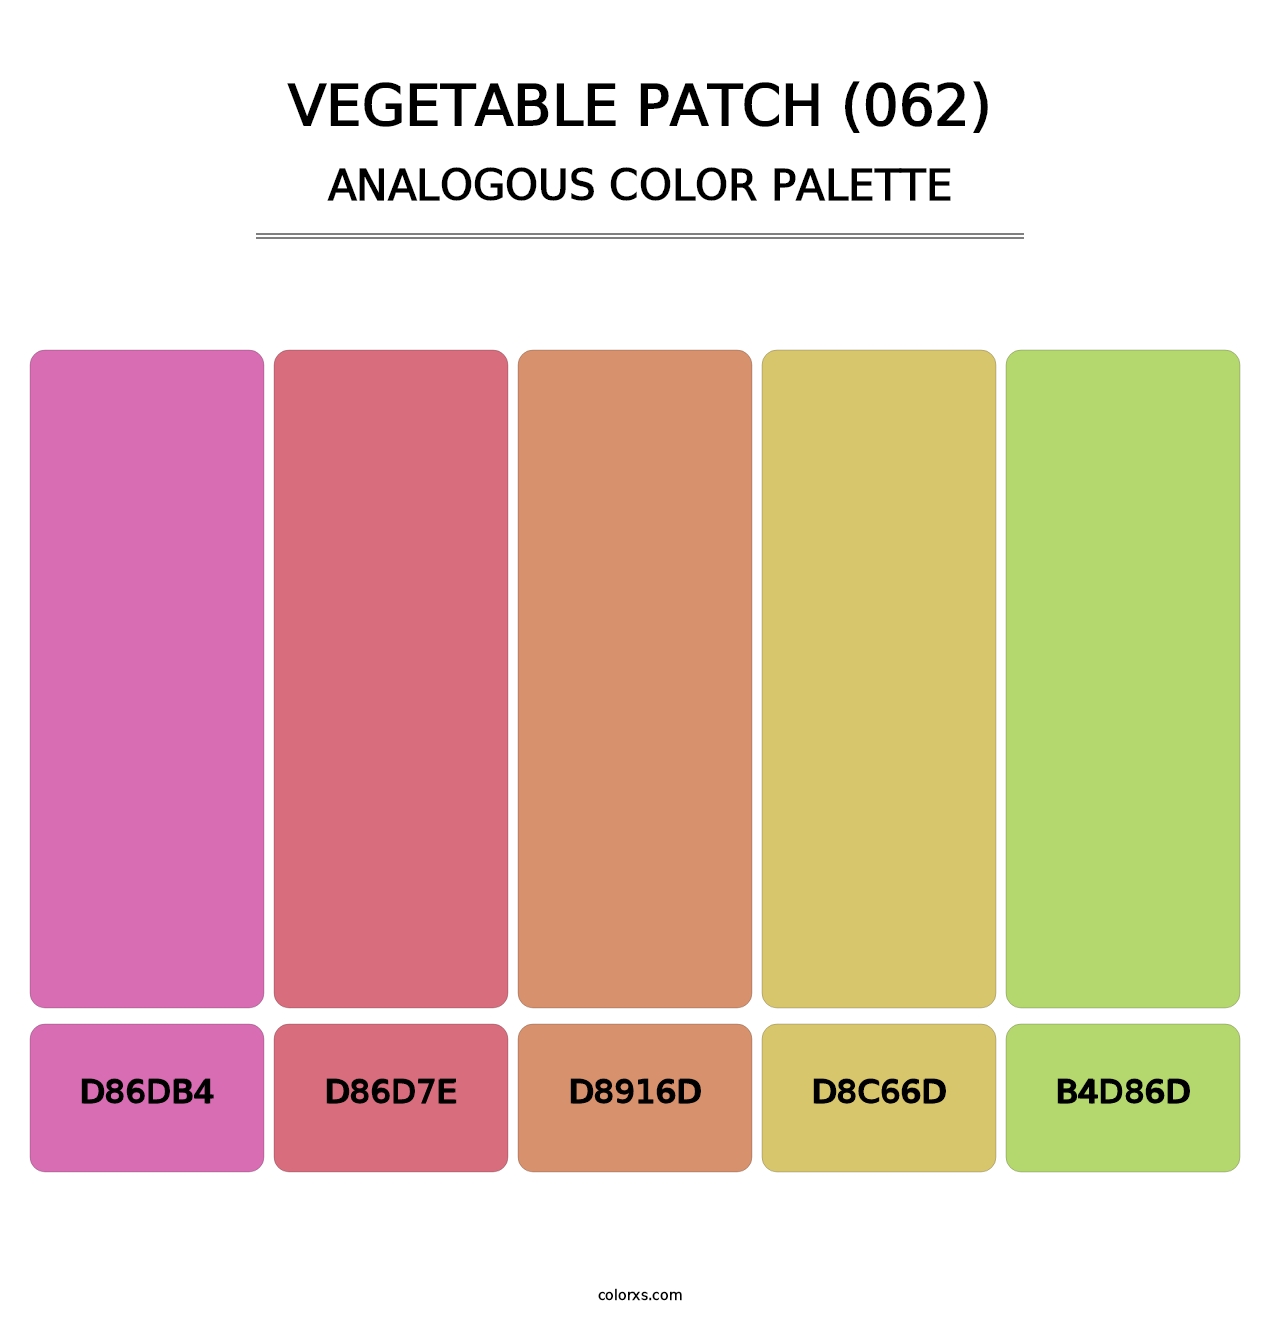 Vegetable Patch (062) - Analogous Color Palette